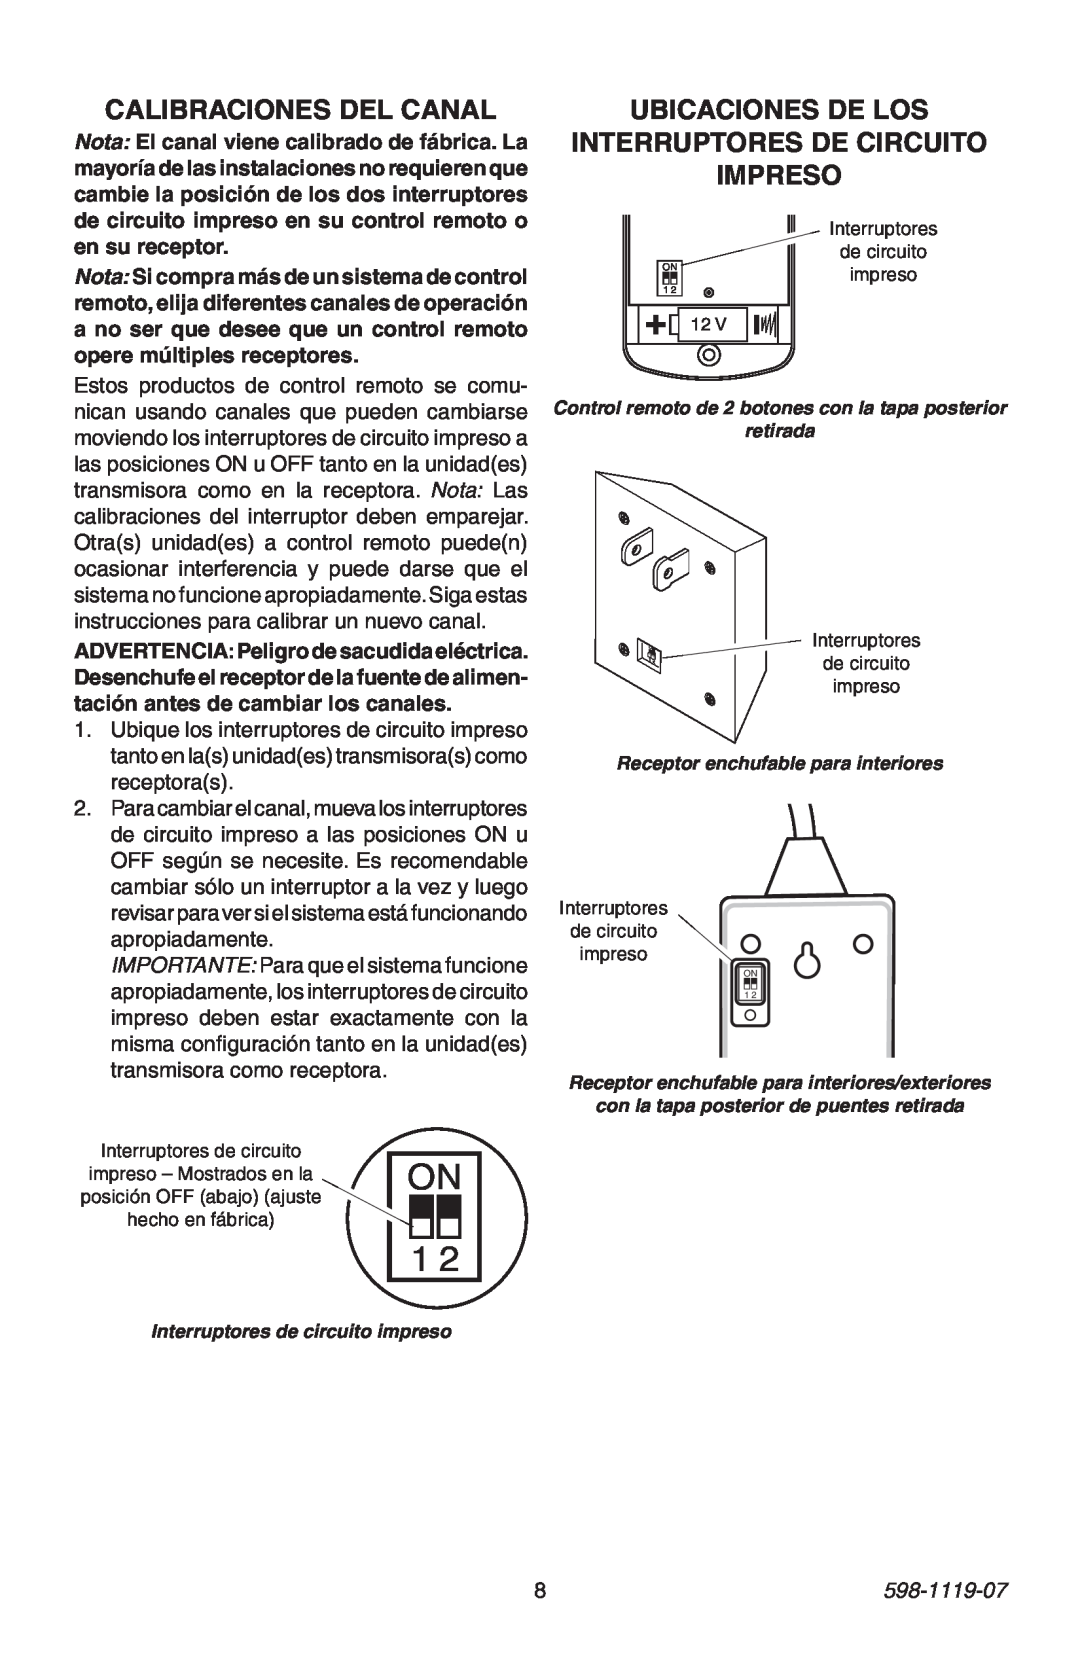 Heath Zenith 598-1119-07 manual Calibraciones Del Canal, Ubicaciones De Los Interruptores De Circuito Impreso 